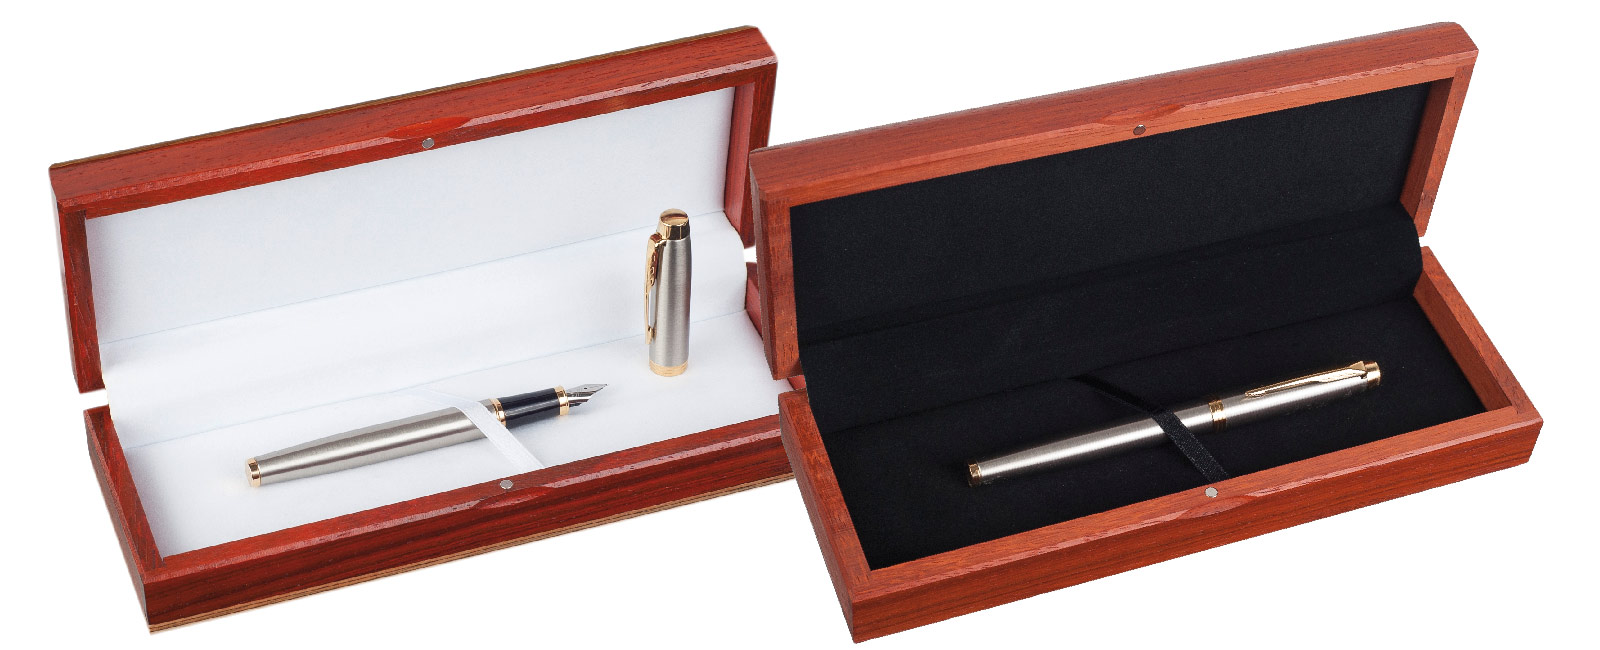 Hochwertige Etuis für Kugelschreiber und Stifte aus Eichenholz, Oberfläche gebeizt und lackiert mit Klarlack. Samteinlage, Magnetverschluss